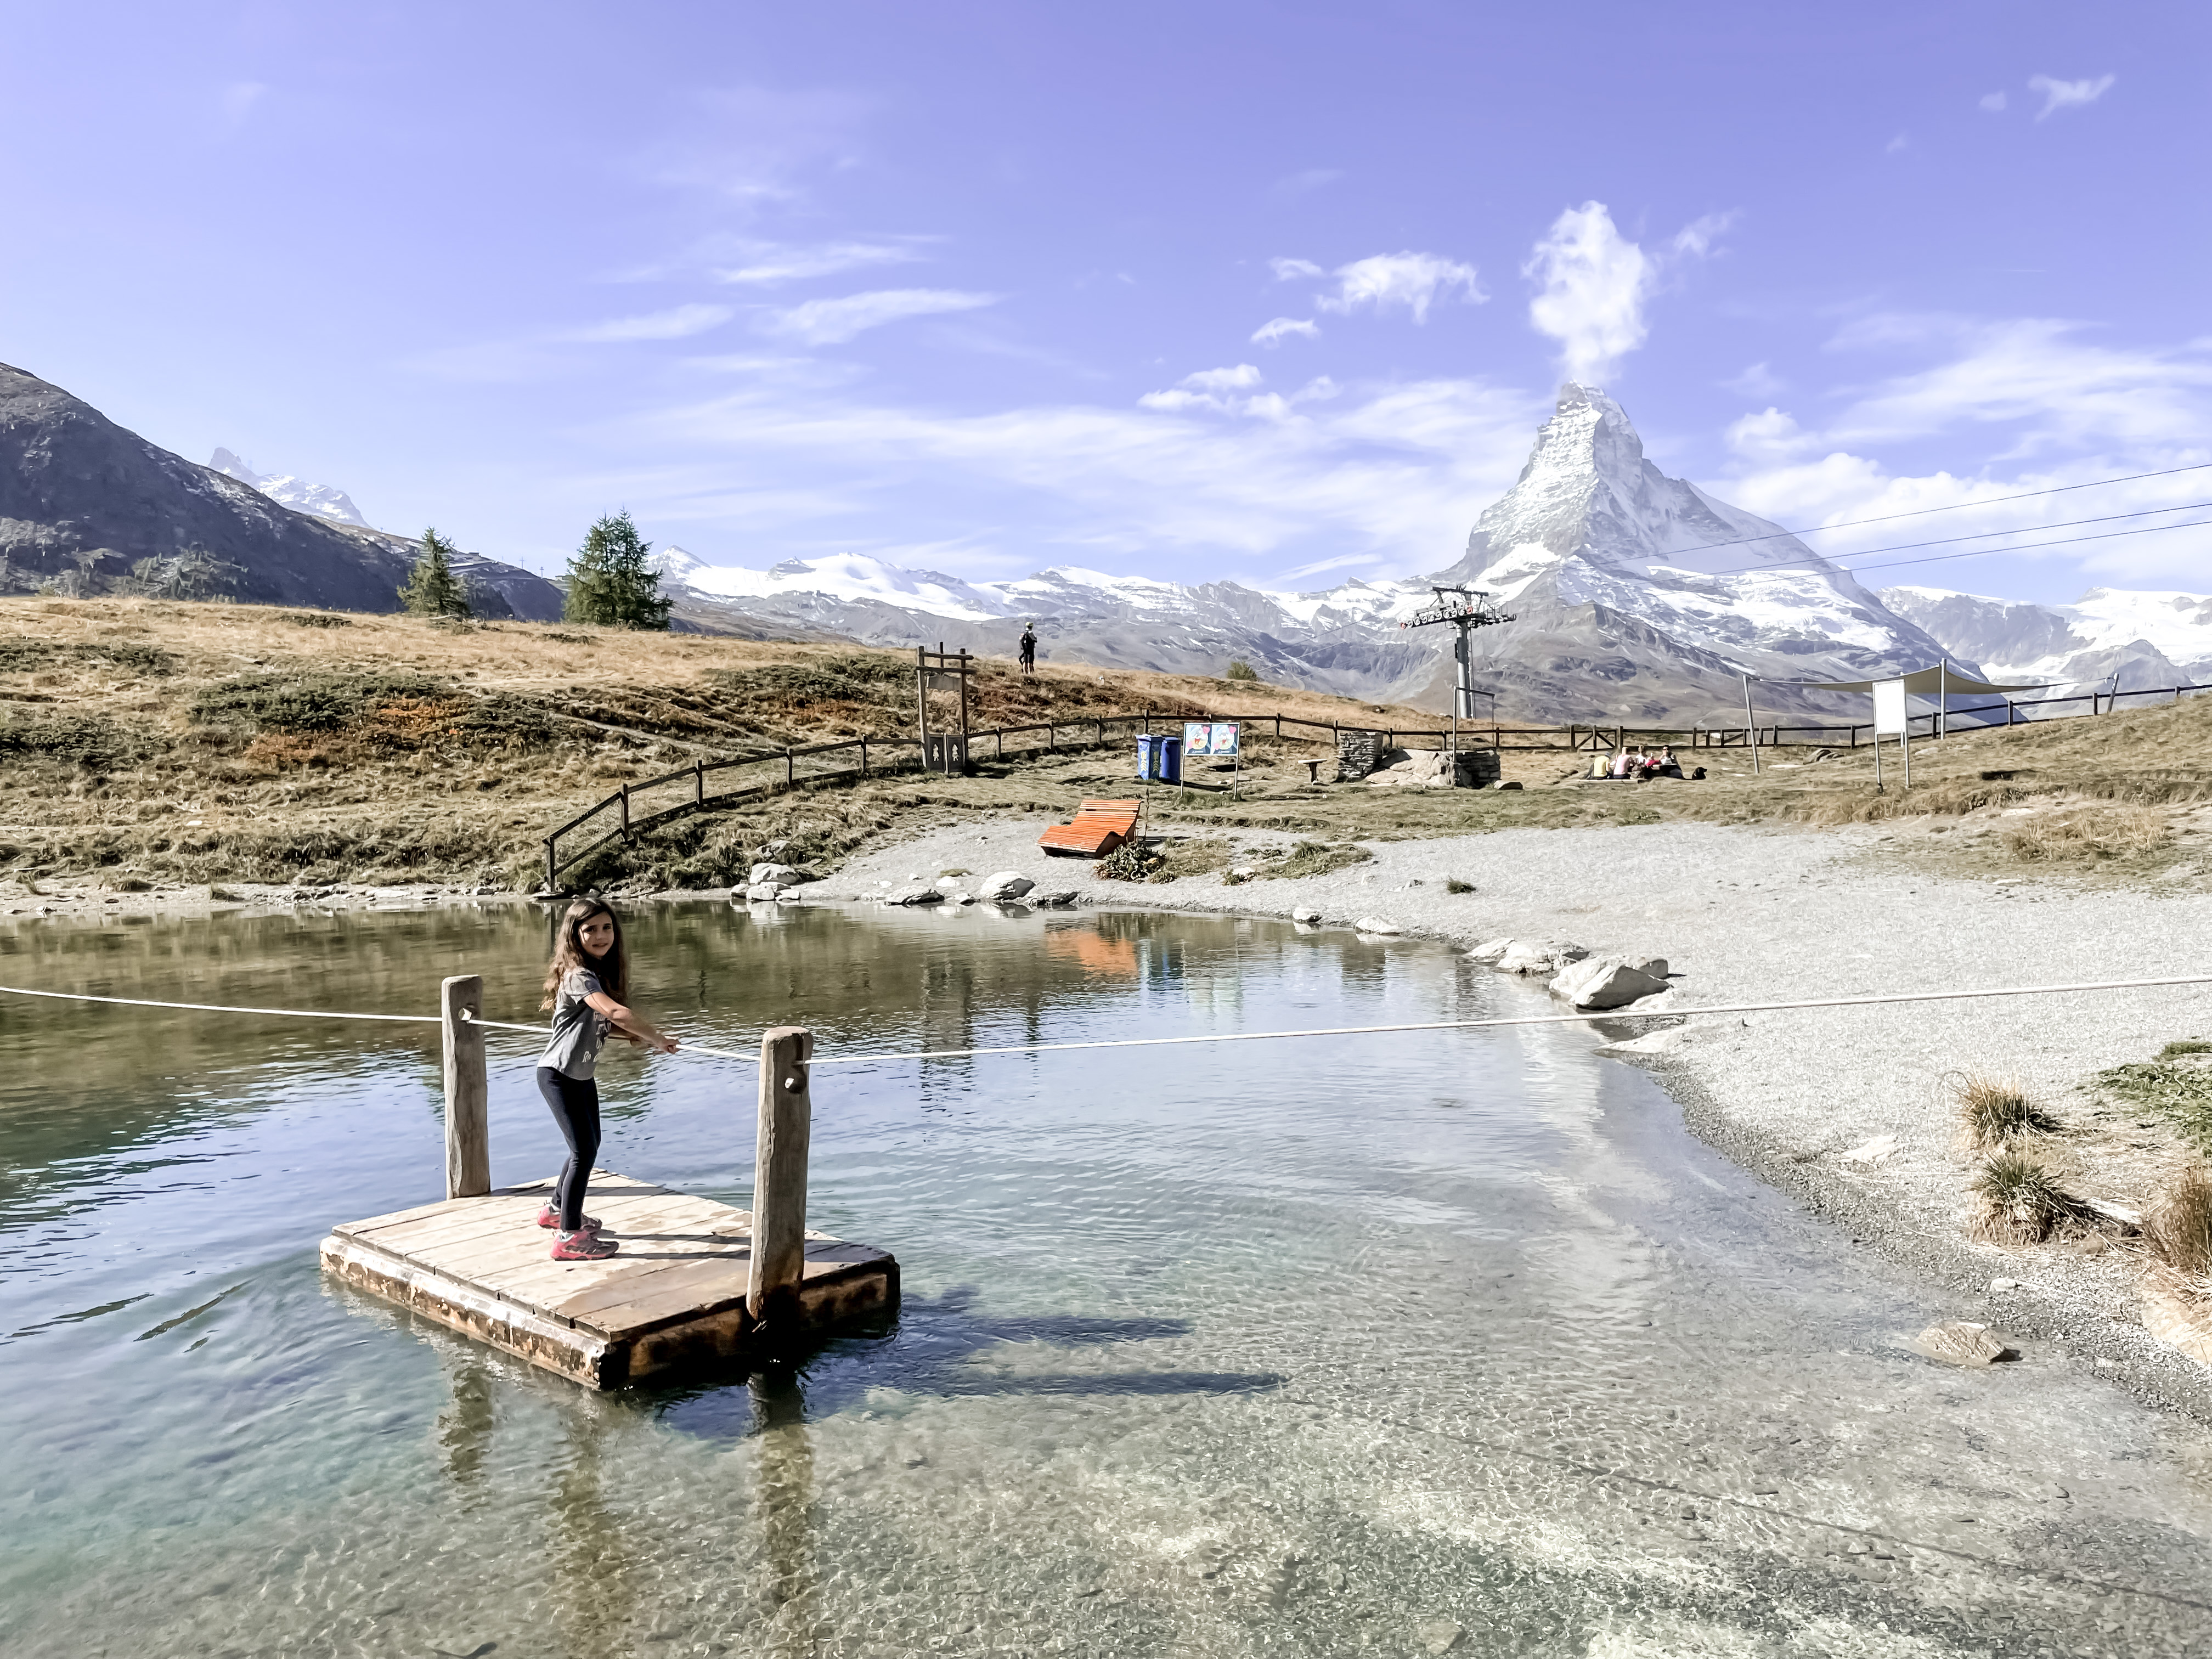 Playground at Sunnegga - Is Zermatt Fun in the Fall